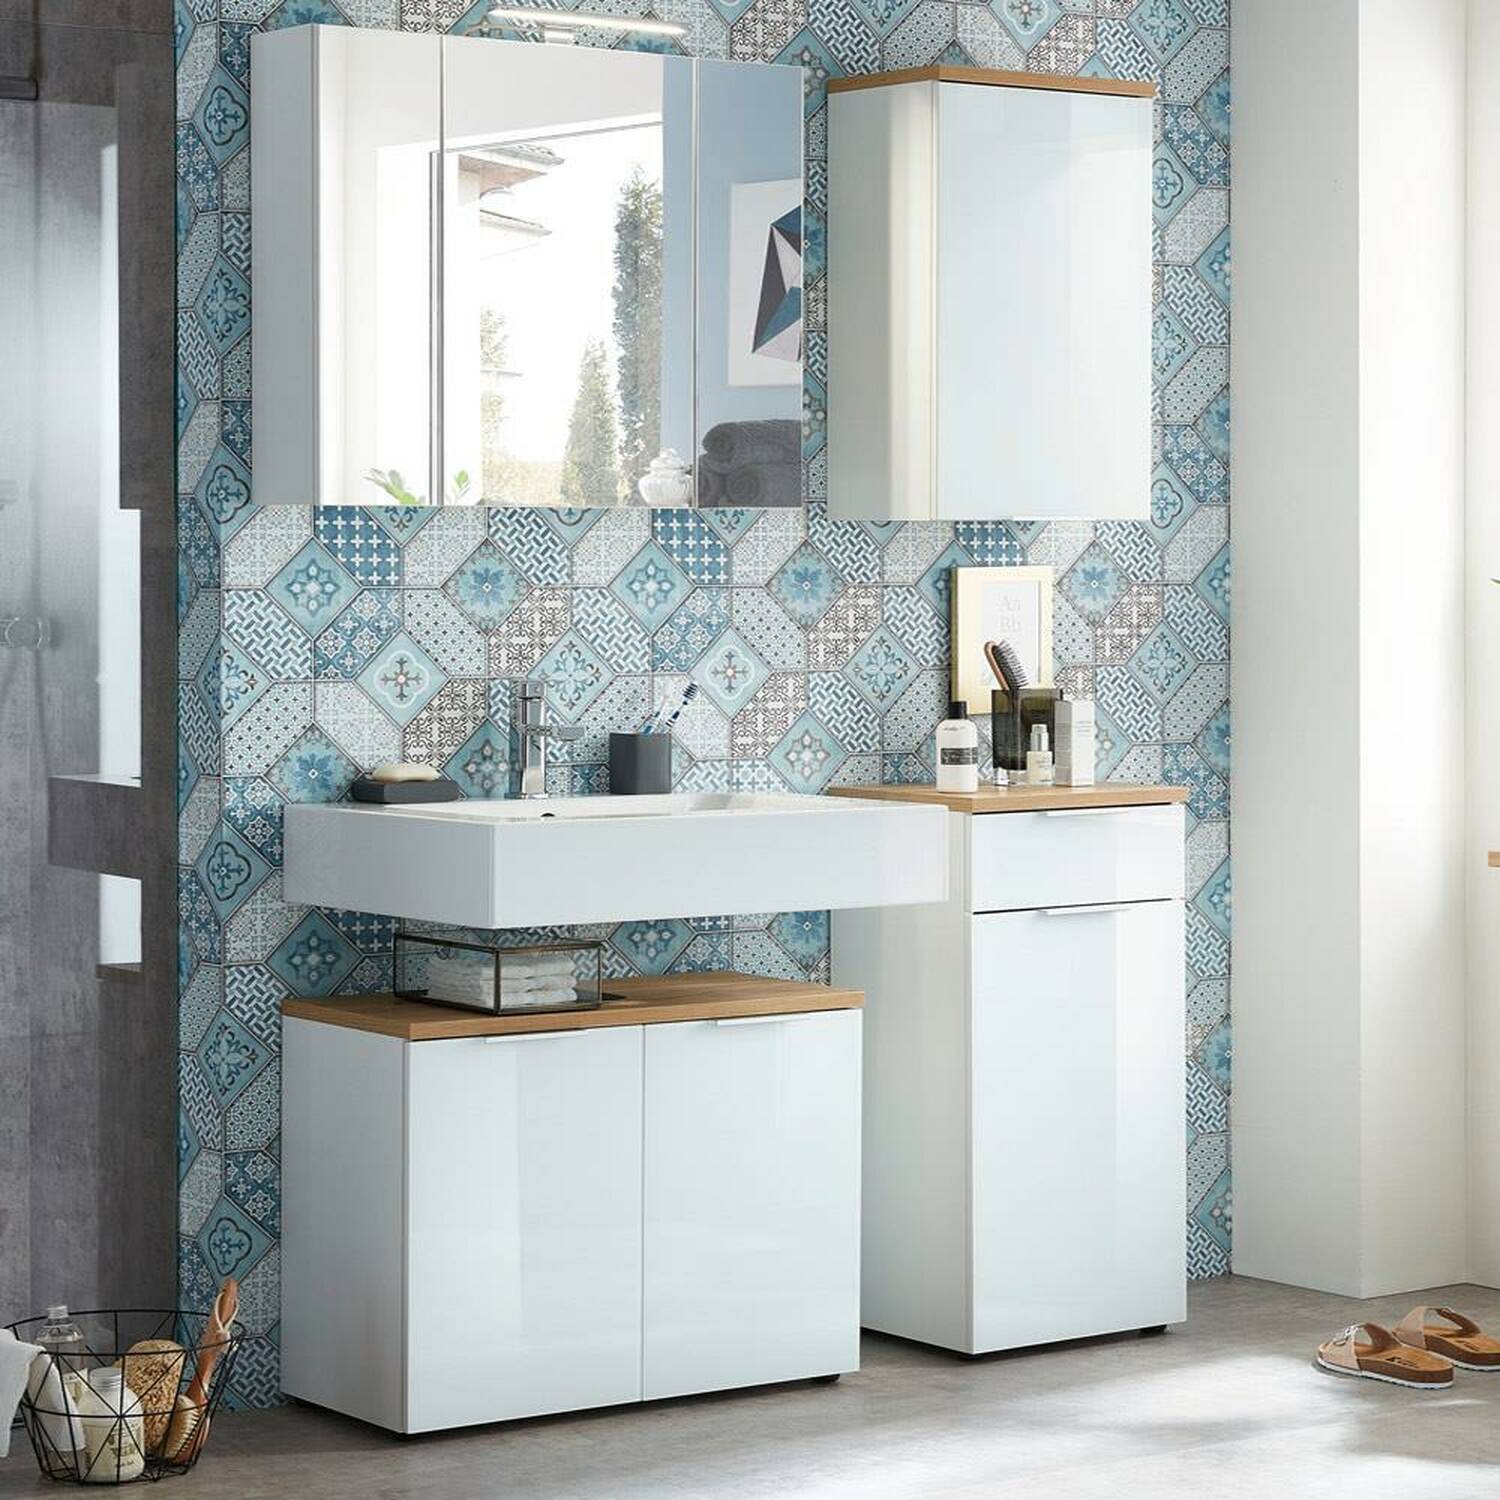 Badmöbel Set weiß Navarra Eiche mit Glasfront kleines Bad moderne Badezimmer Möbel komplett Kombination Spiegelschrank Badschränke Holz